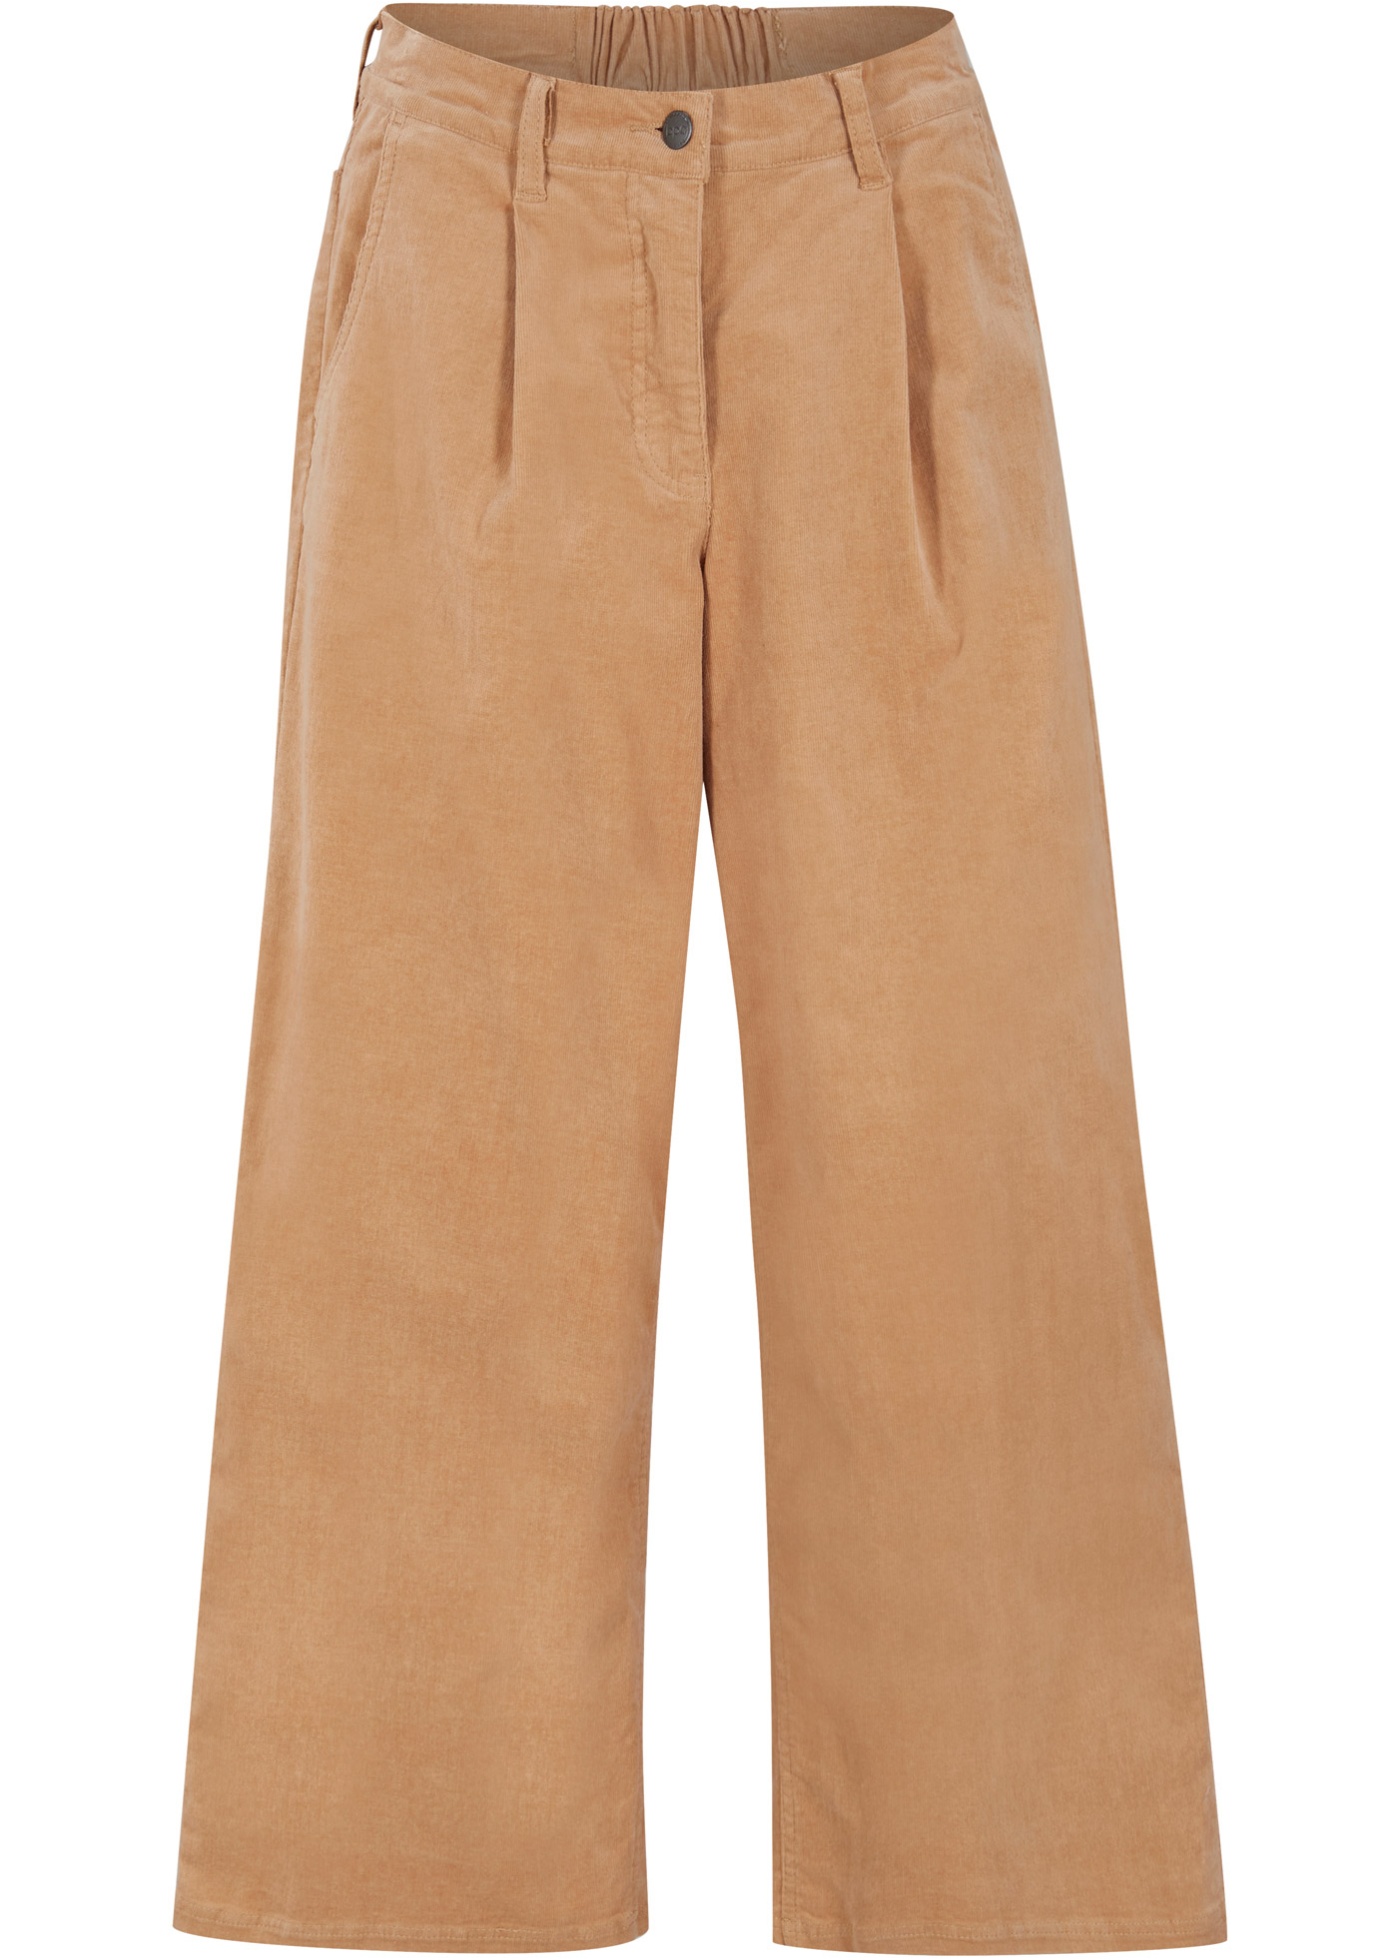 Pantaloni culotte di velluto elasticizzato con cinta comoda (Marrone) - bpc bonprix collection